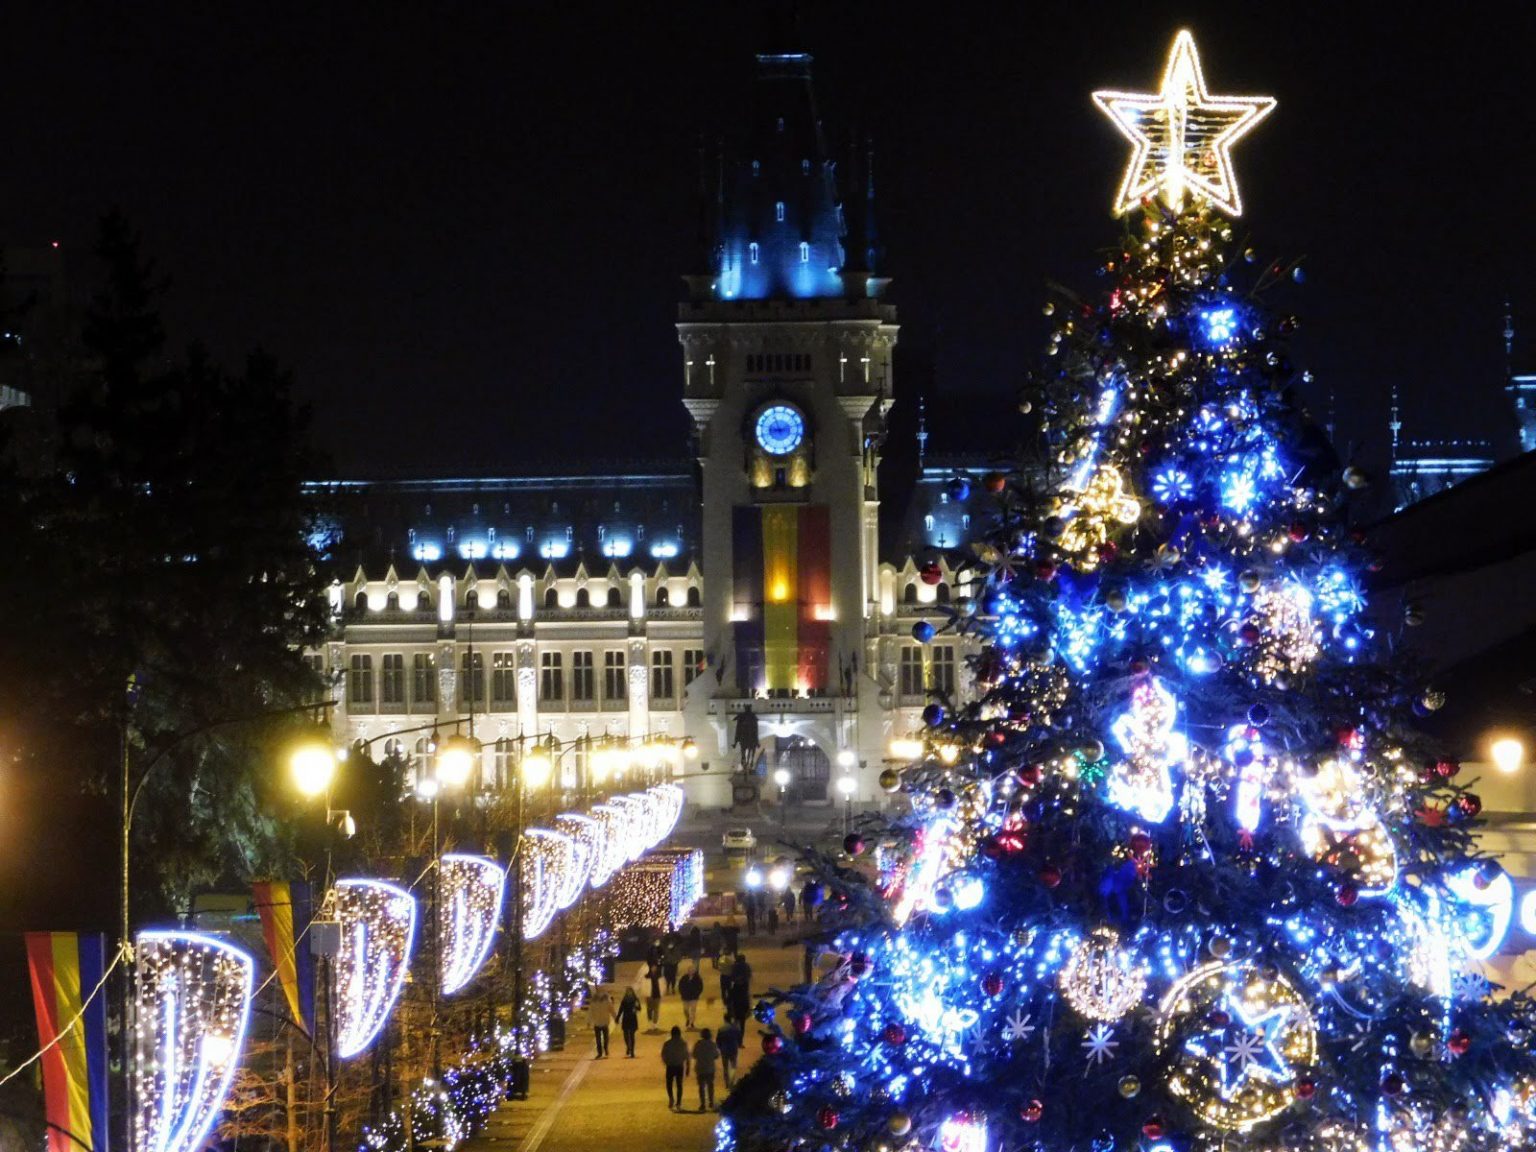 Cel mai înalt brad de Crăciun din România a fost montat. Iată ce înălțime are și unde a fost amplasat